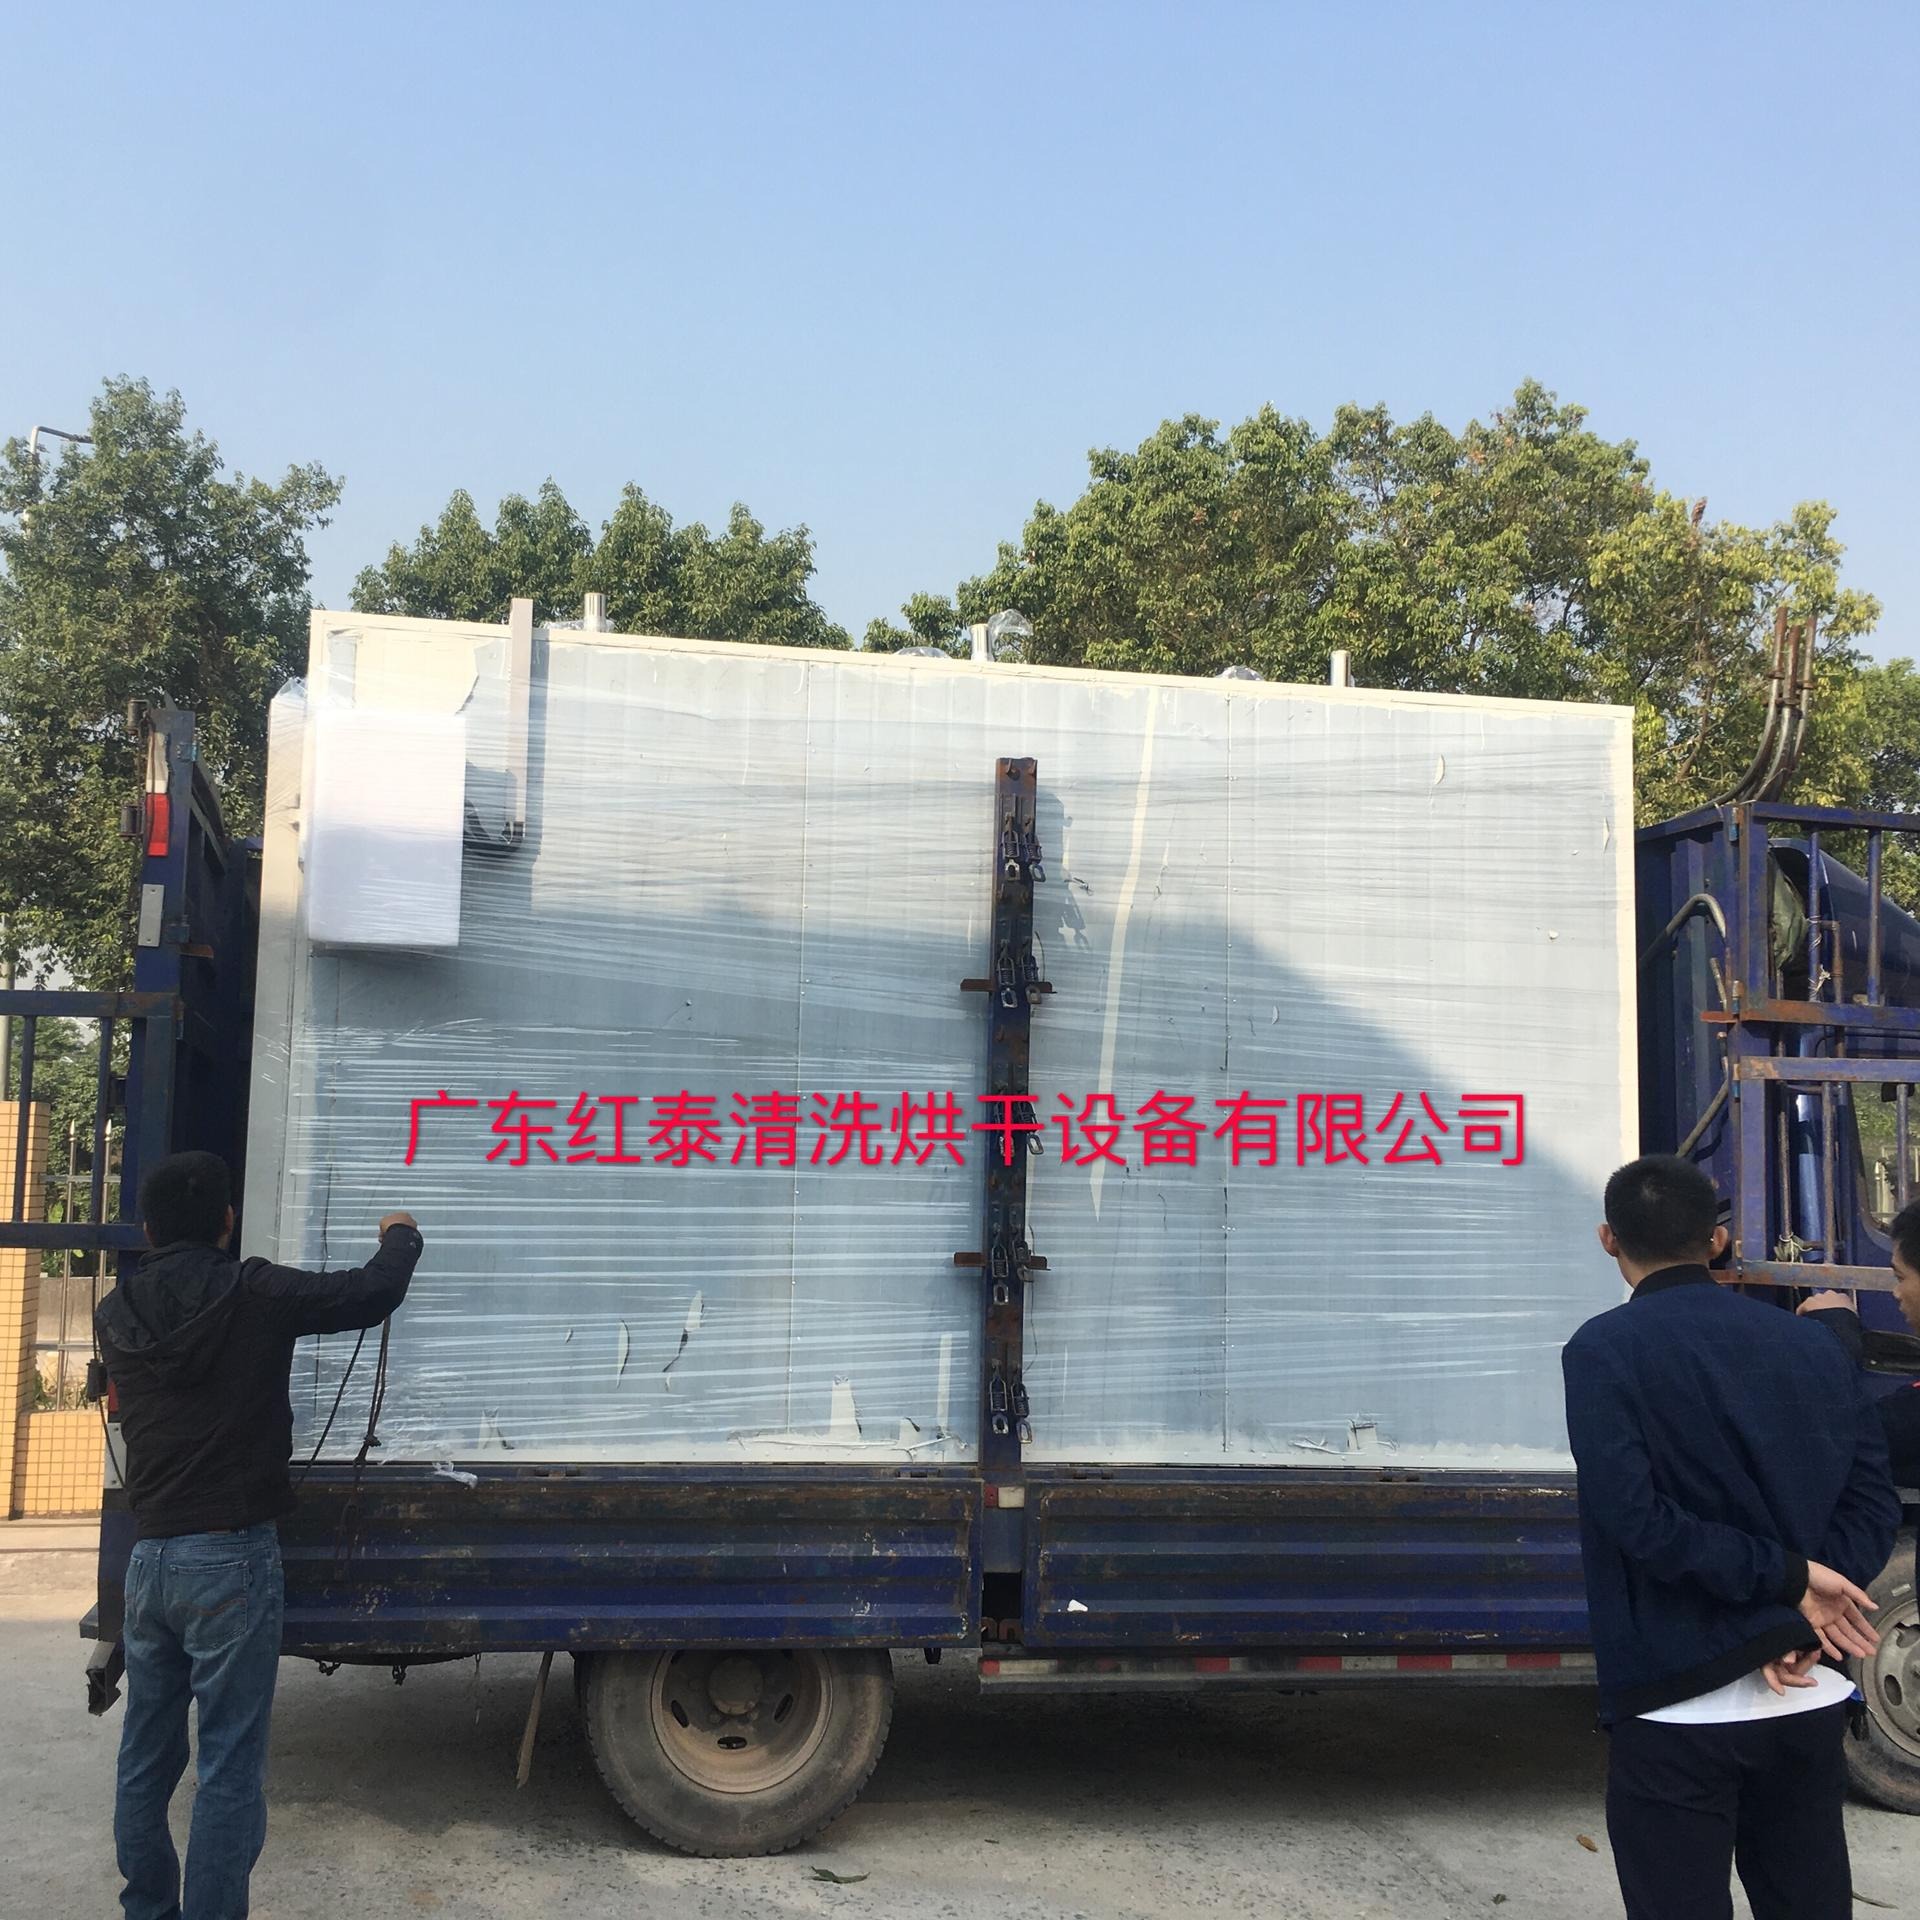 东莞厂家直销不锈钢烘箱 真空干燥箱 热风循环烘箱 防潮柜 红泰20191125